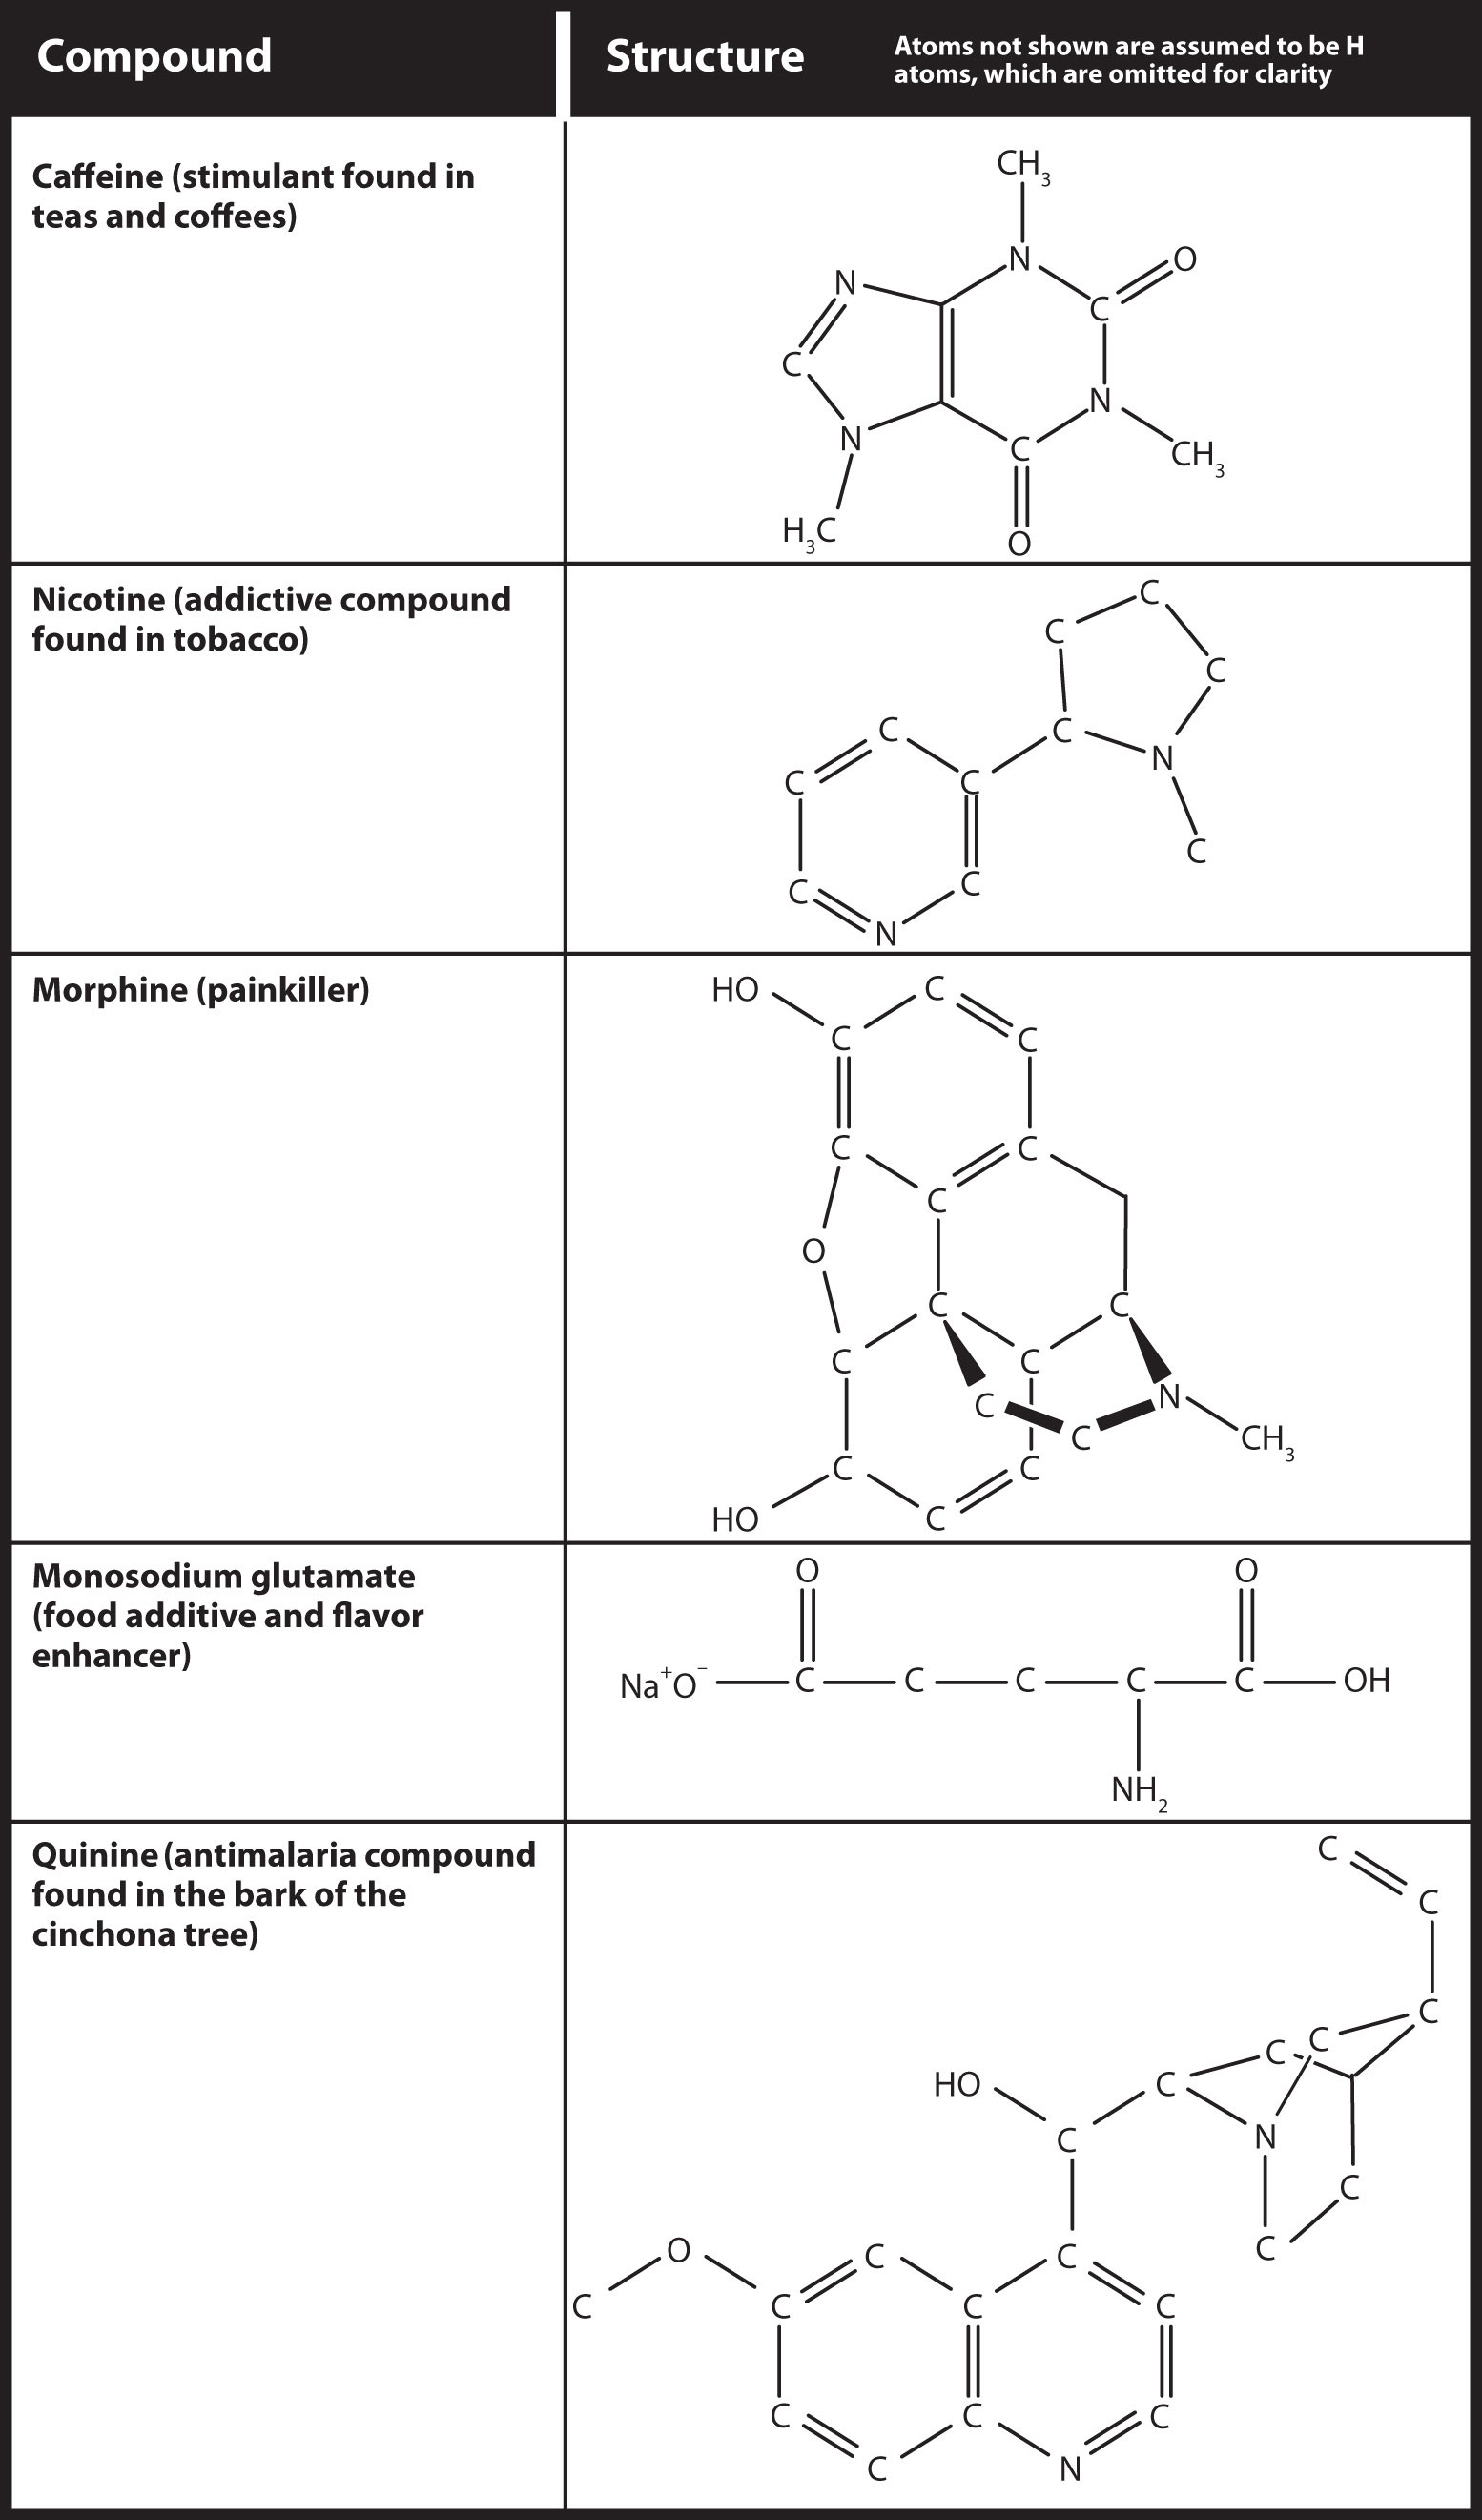 Se muestran las estructuras de cafeína, nicotina, morfina, glutamato monosódico y quinina.